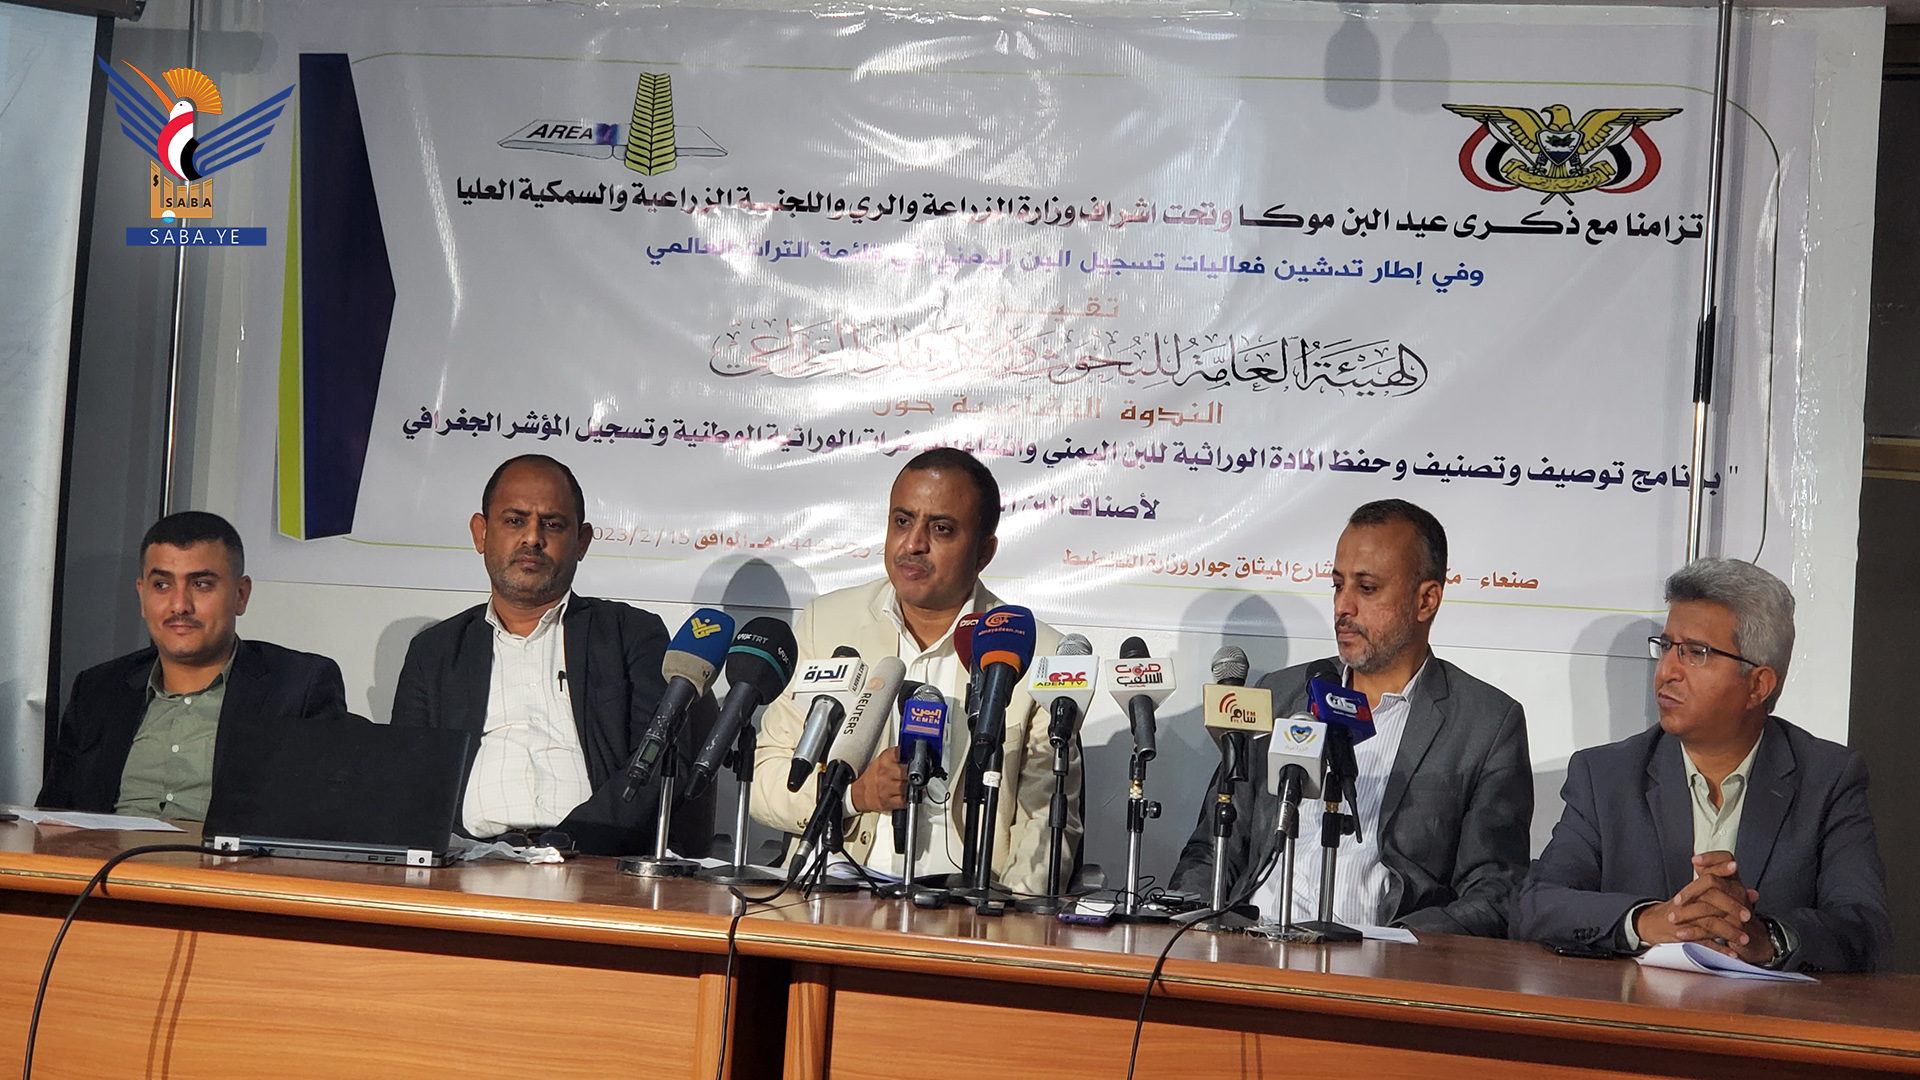 مؤتمر صحفي حول توصيف وحفظ المادة الوراثية للبن اليمني